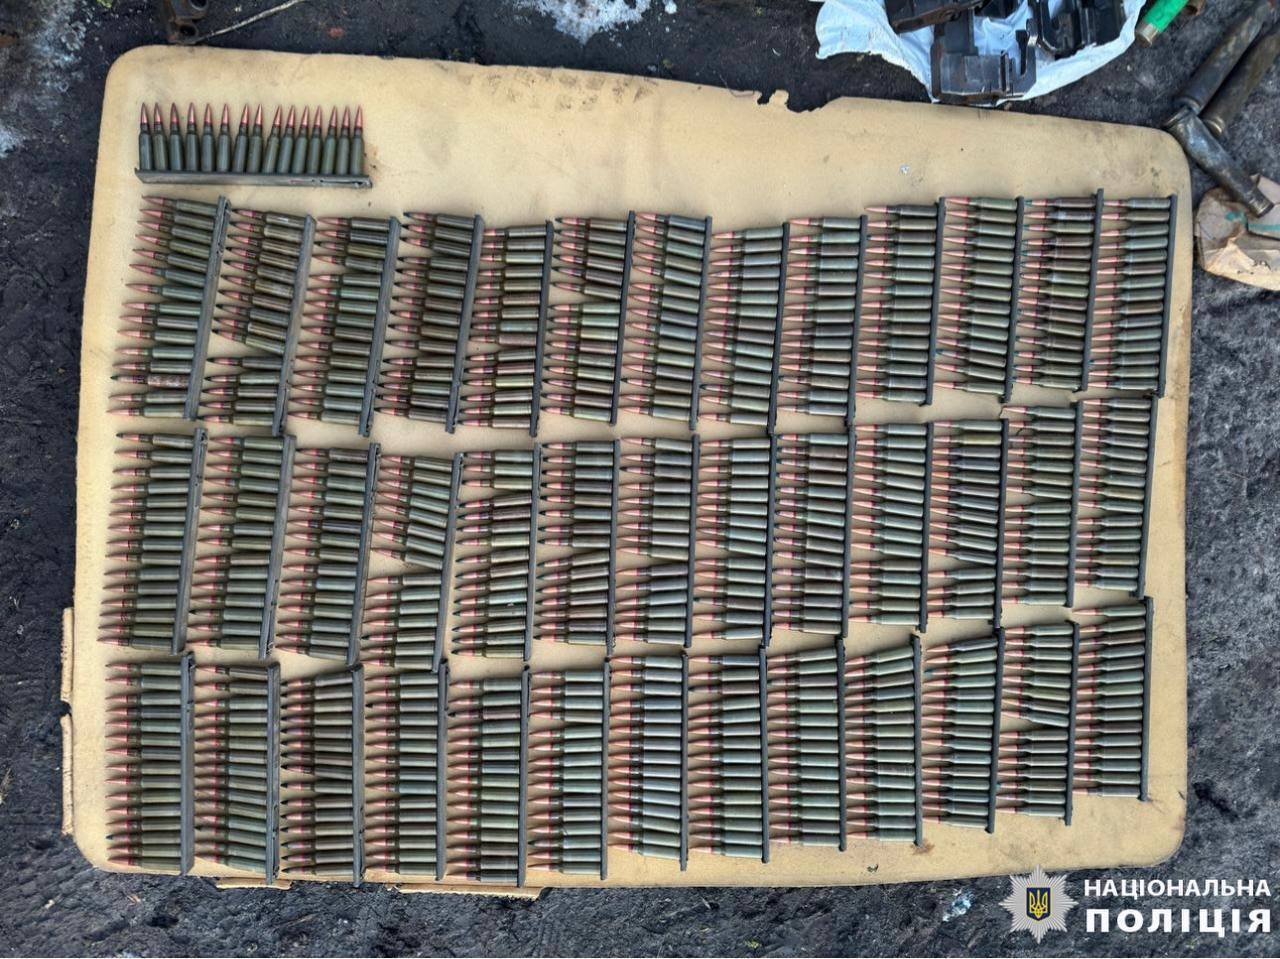 Кулемет, гранати та вибухівка: на Київщині в чоловіка вдома знайшли цілий арсенал зброї. Фото